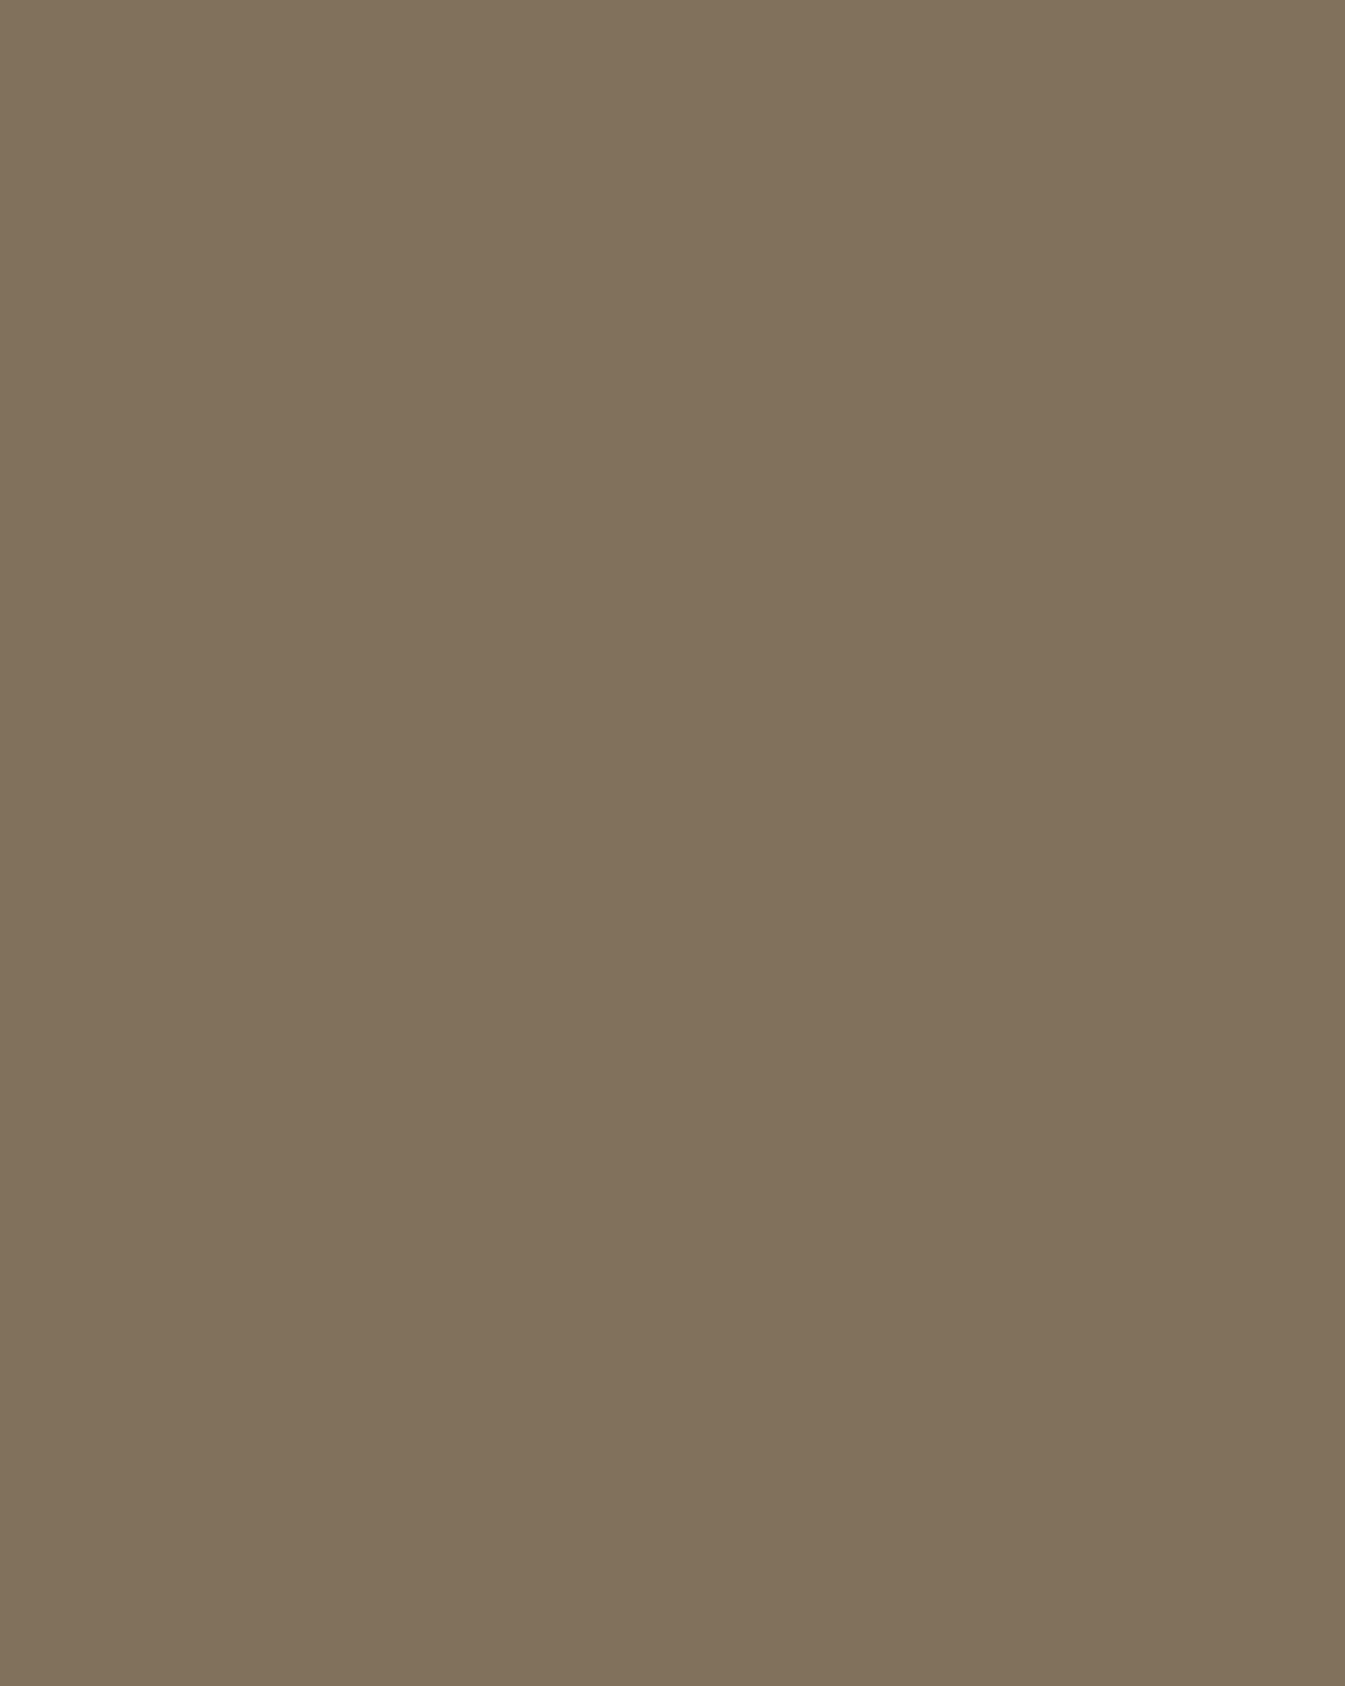 Михаил Нестеров. Покров Богоматери (фрагмент). 1914. Государственная Третьяковская галерея, Москва